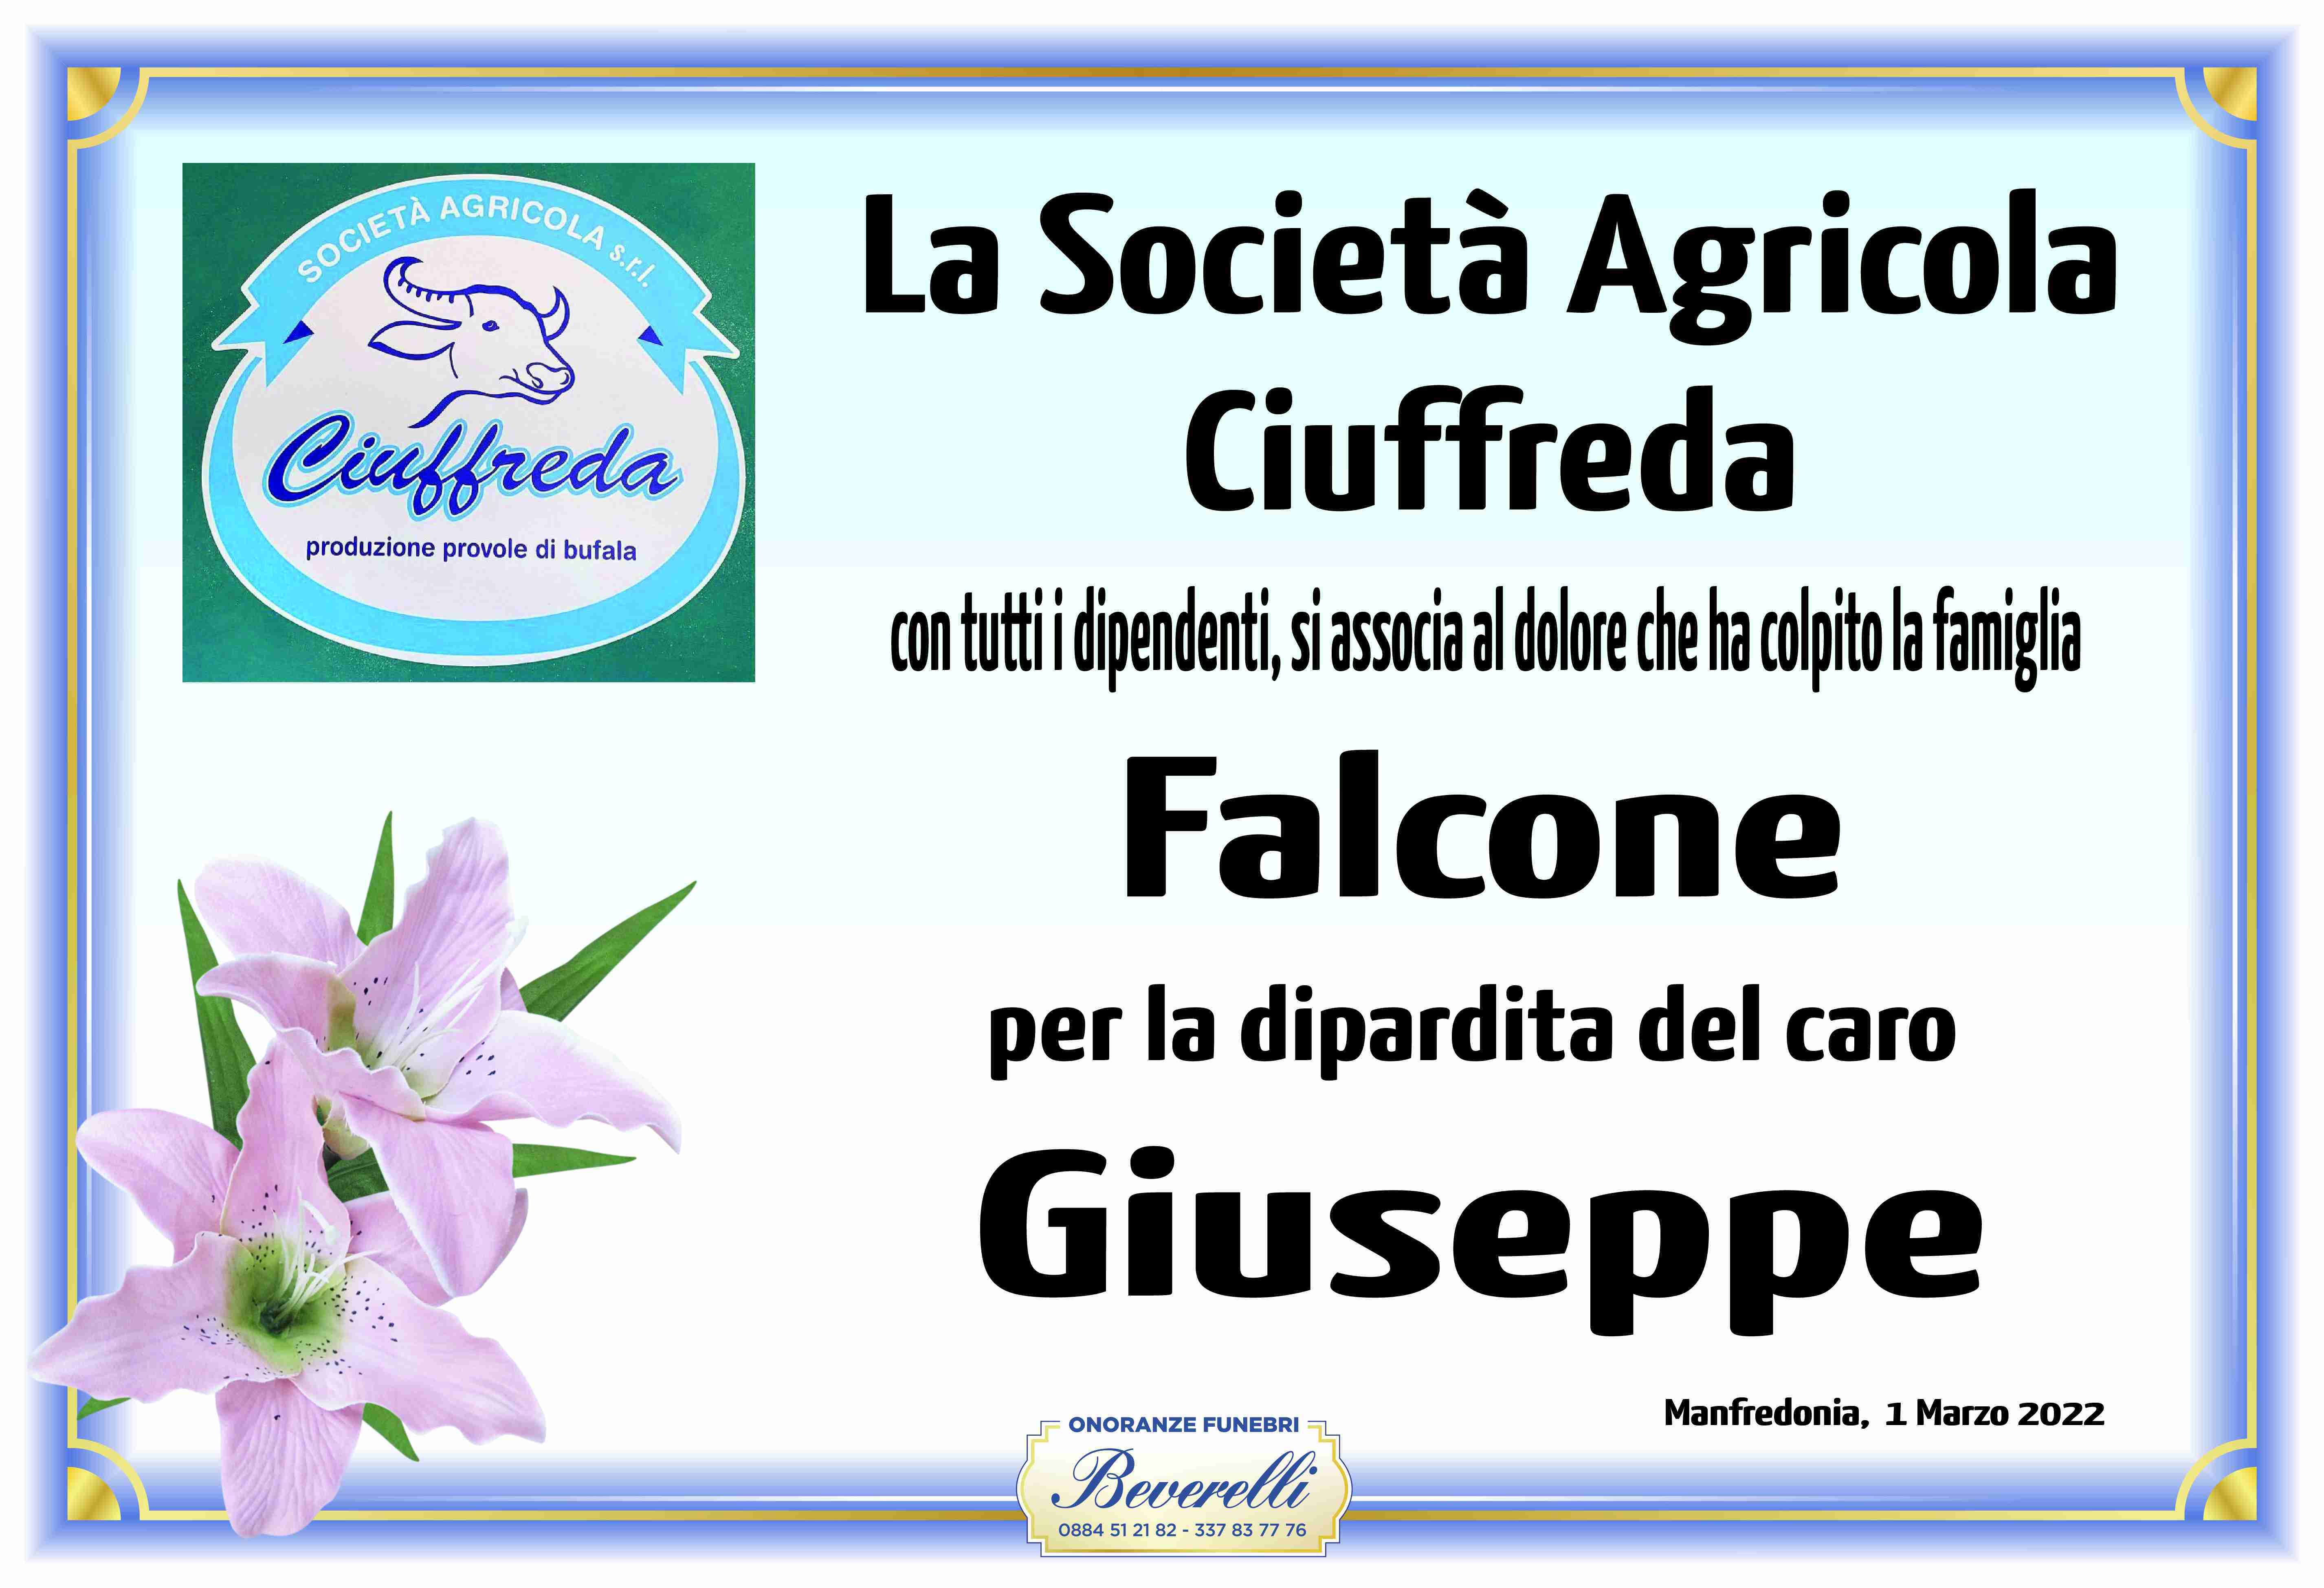 Giuseppe Falcone